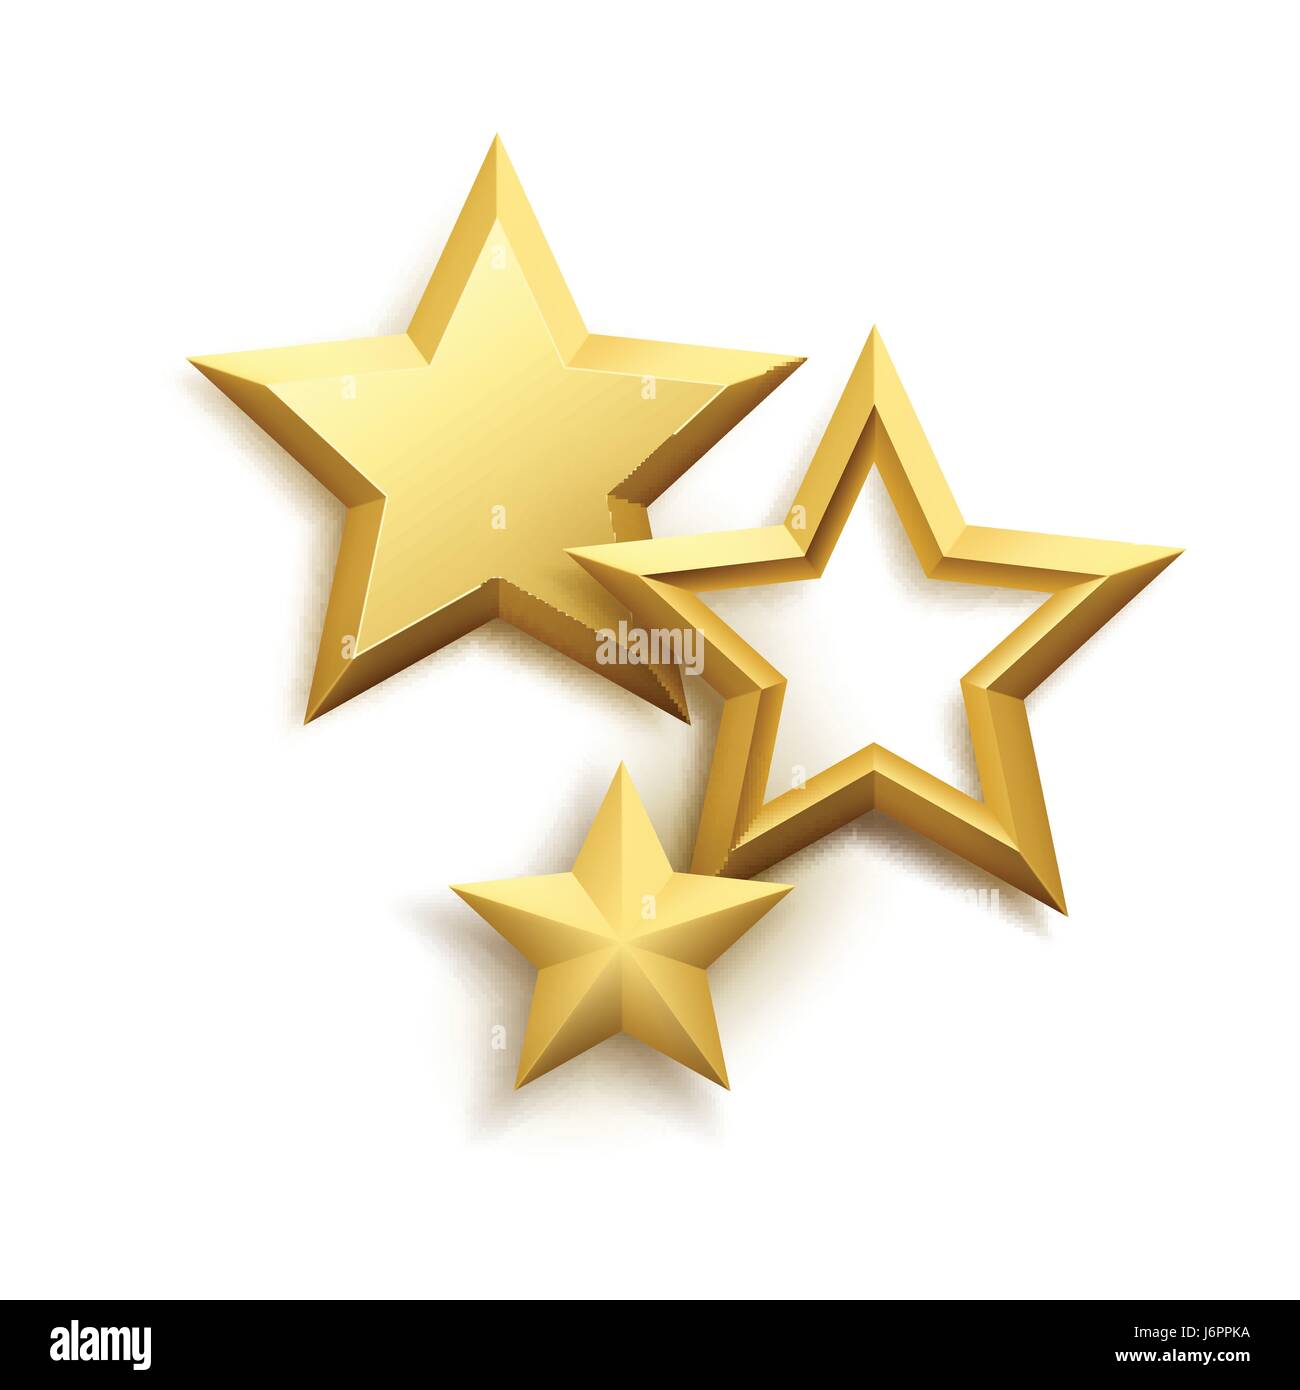 Realistische metallic Sterne Hintergrund. Vektor-illustration Stock Vektor